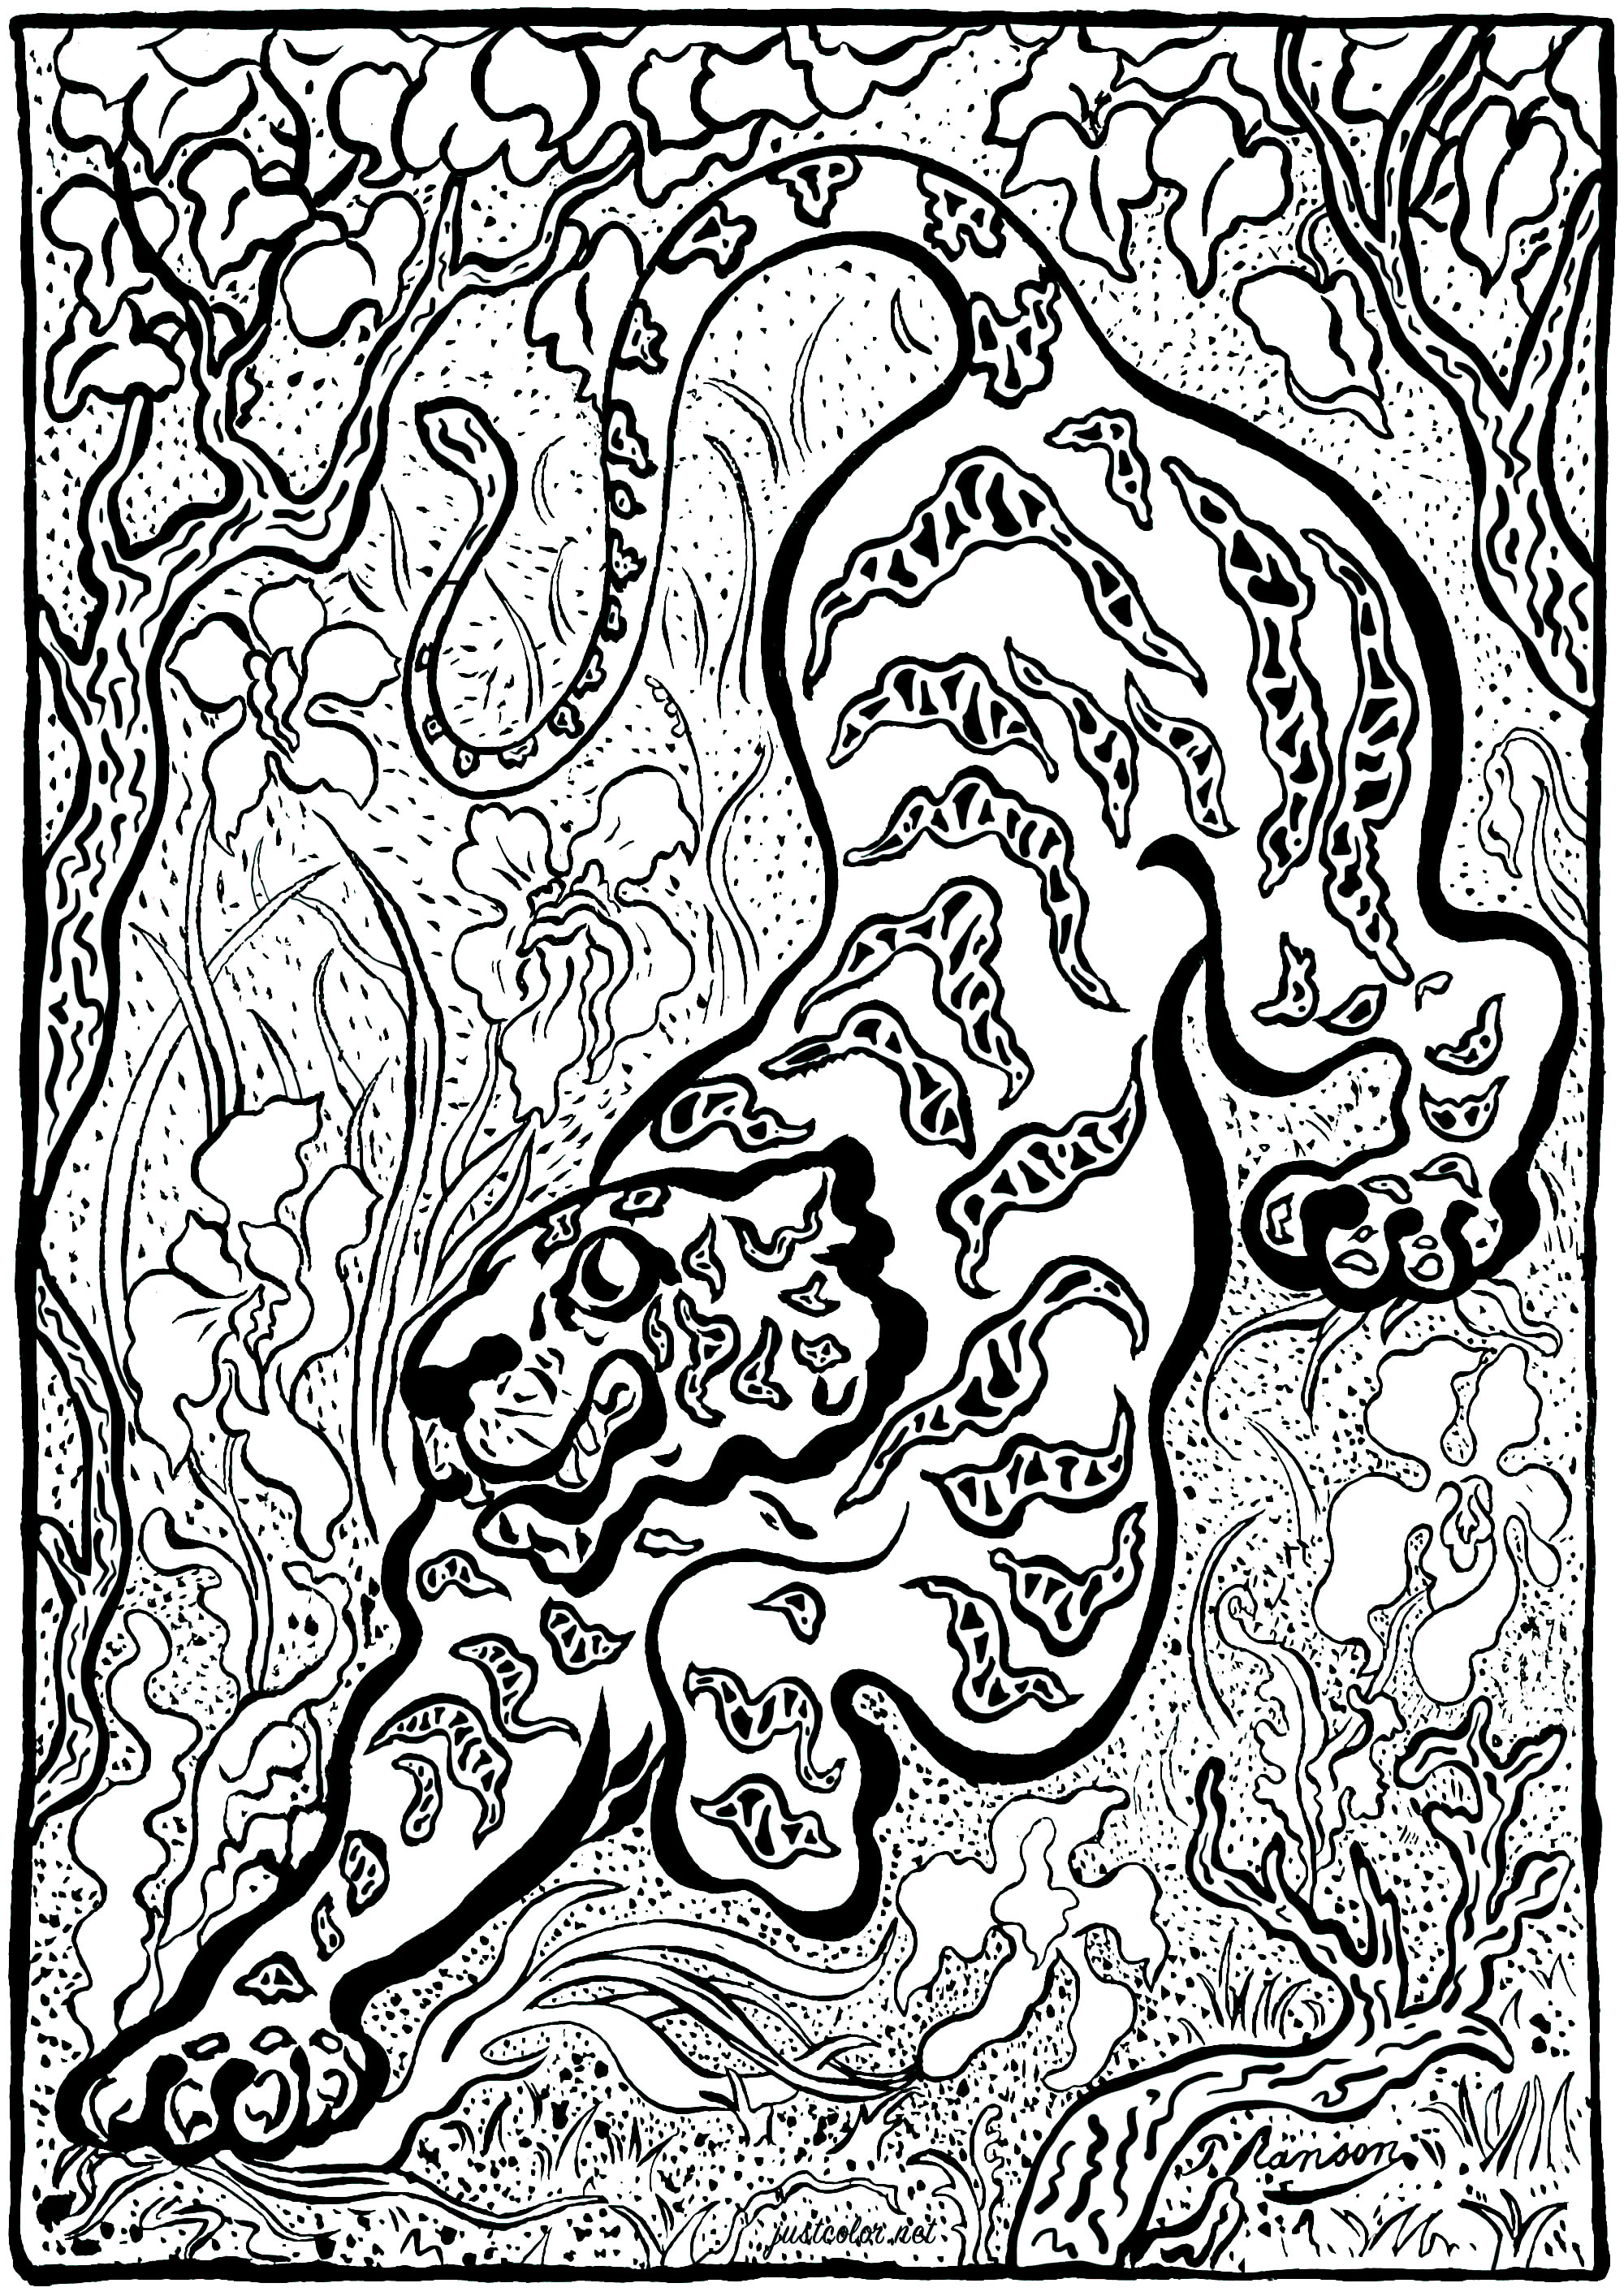 Coloriage créé à partir de 'Tigre dans les jungles' par Paul-Élie Ranson (1883) - Version 2 (complexe). Paul-Élie Ranson, qui appartient au groupe des Nabis, a développé un style original aux résonances symbolistes et ésotériques.Inscrit dans l'histoire du postimpressionnisme mais en rupture avec l'impressionnisme, le mouvement nabi prône un retour à l'imaginaire et à la subjectivité.